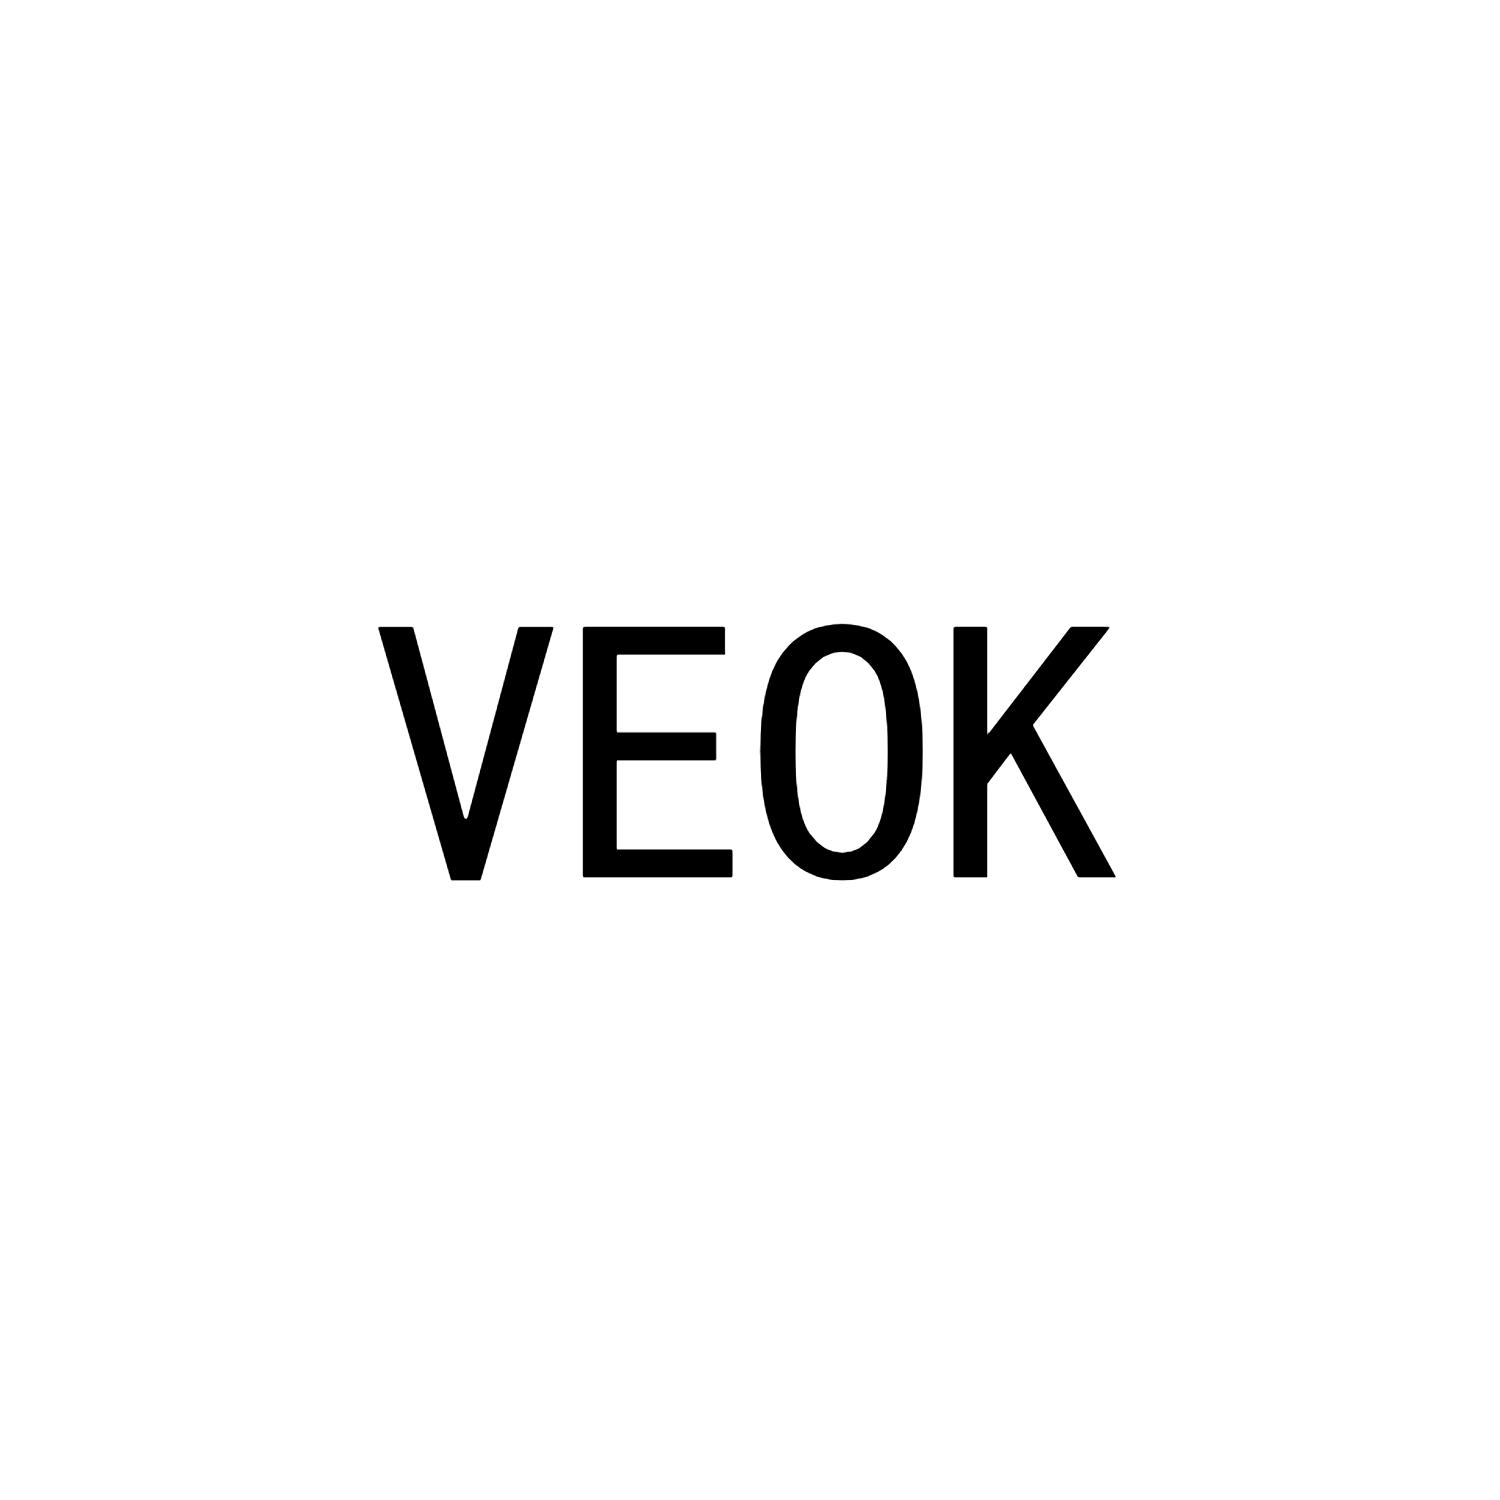 VEOK